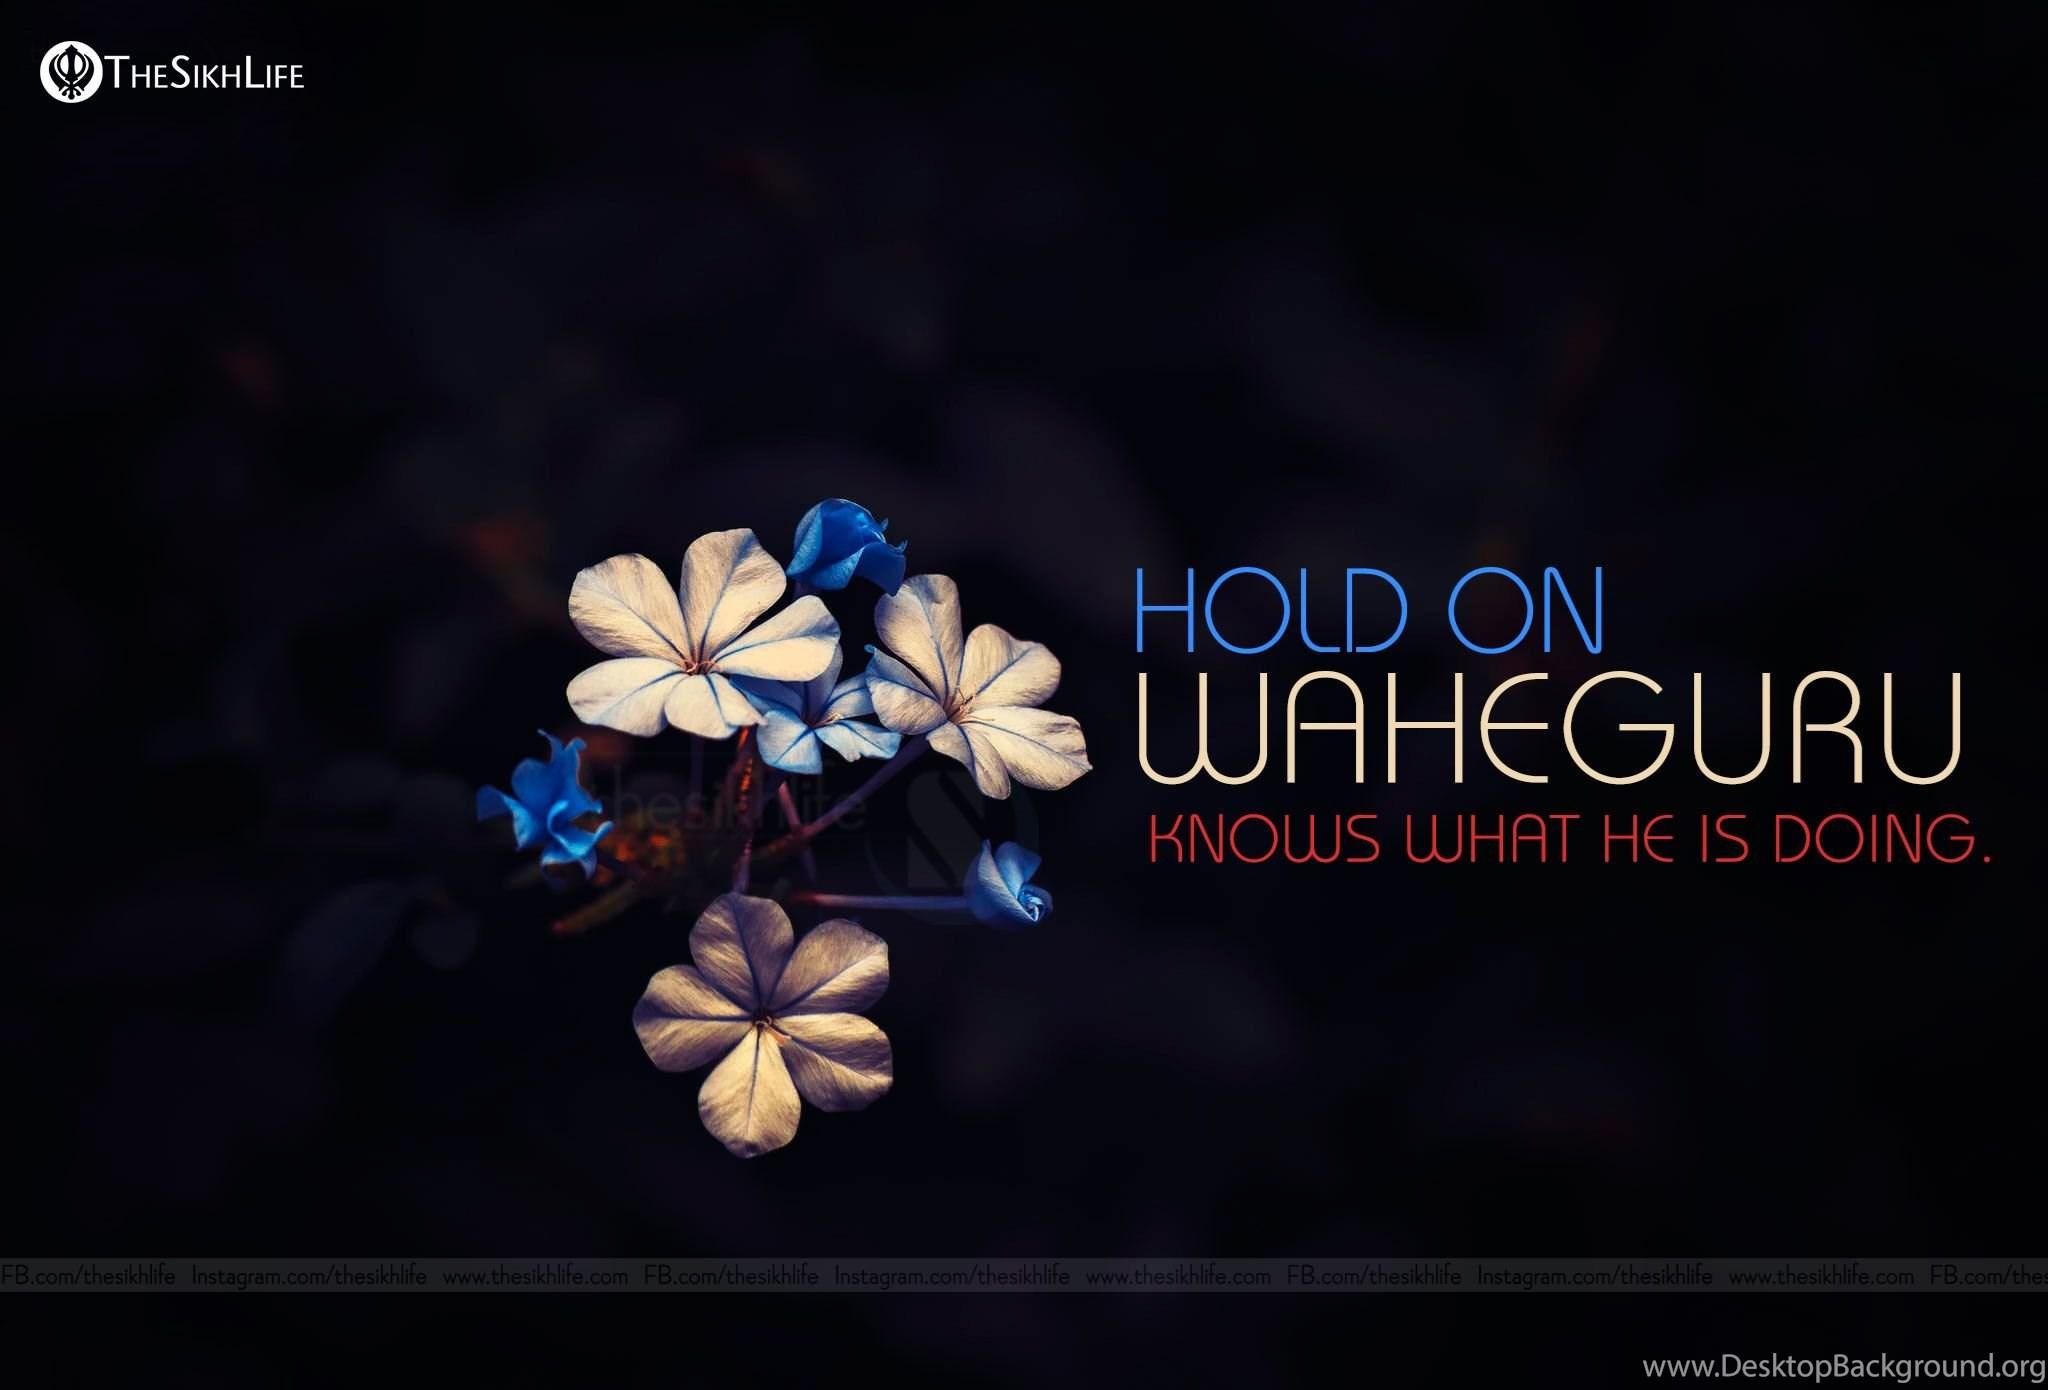 Waheguru Wallpapers - Top Những Hình Ảnh Đẹp